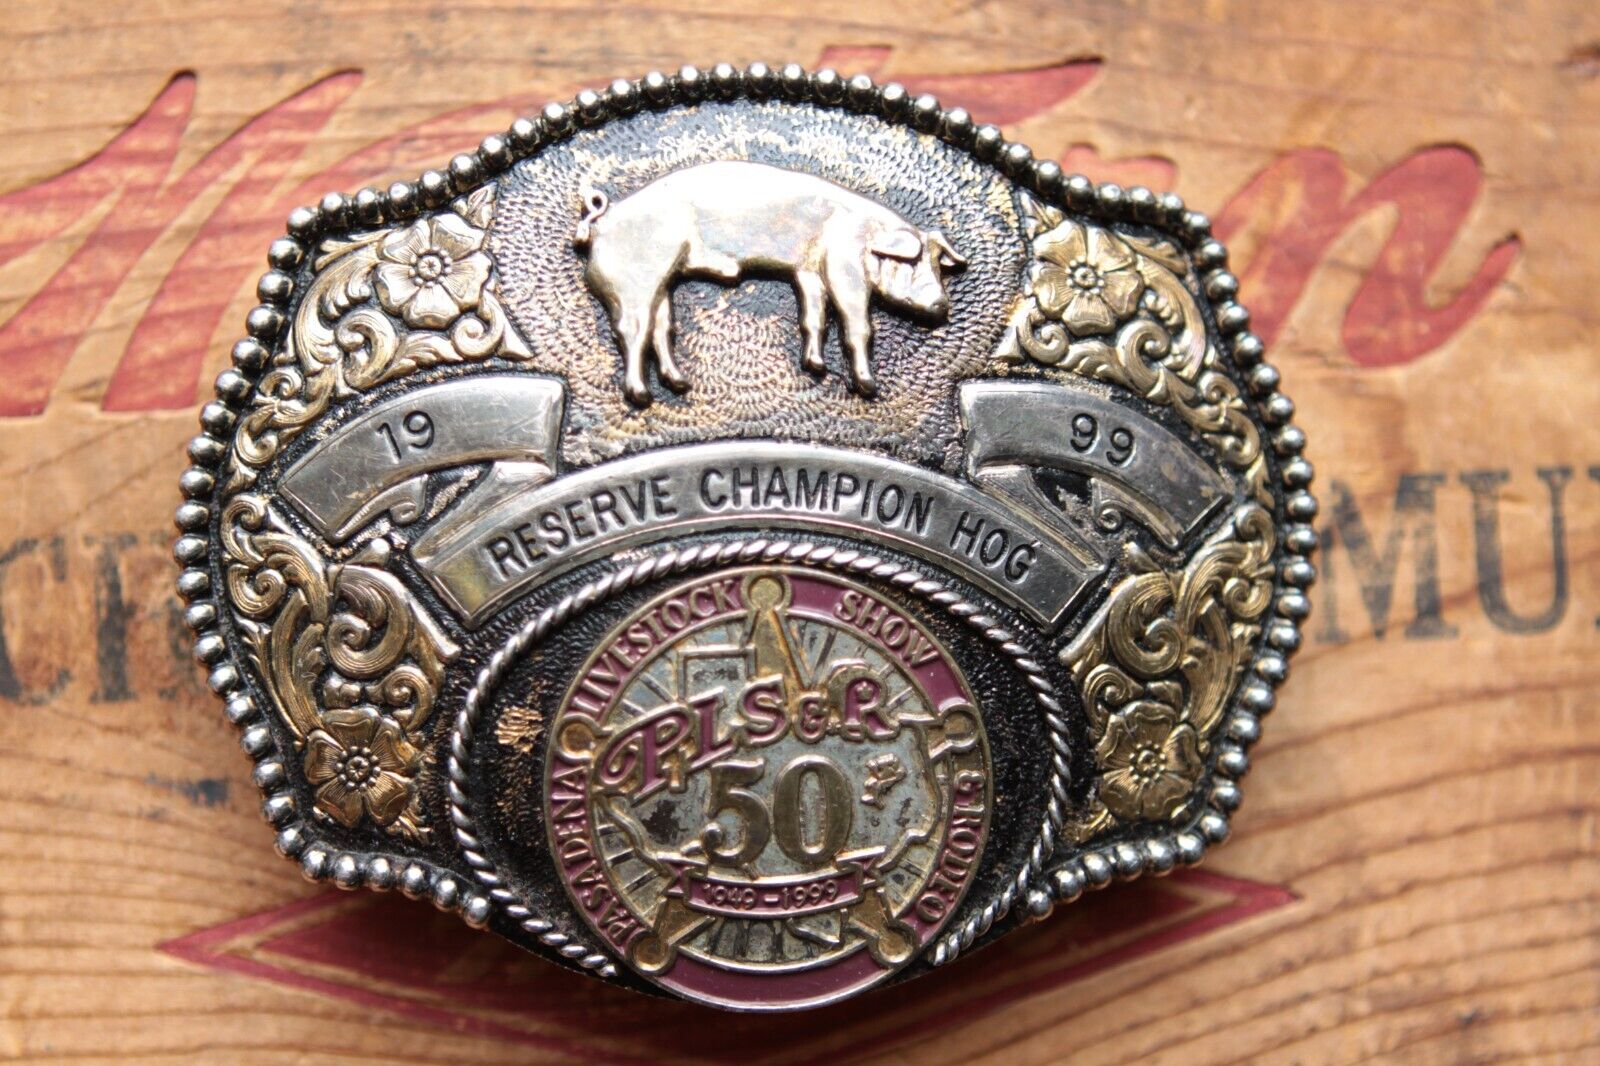 Vtg ADM Res Champion Hog 1999 PLSR Pasadena Live Stock Show & Rodeo Belt Buckle